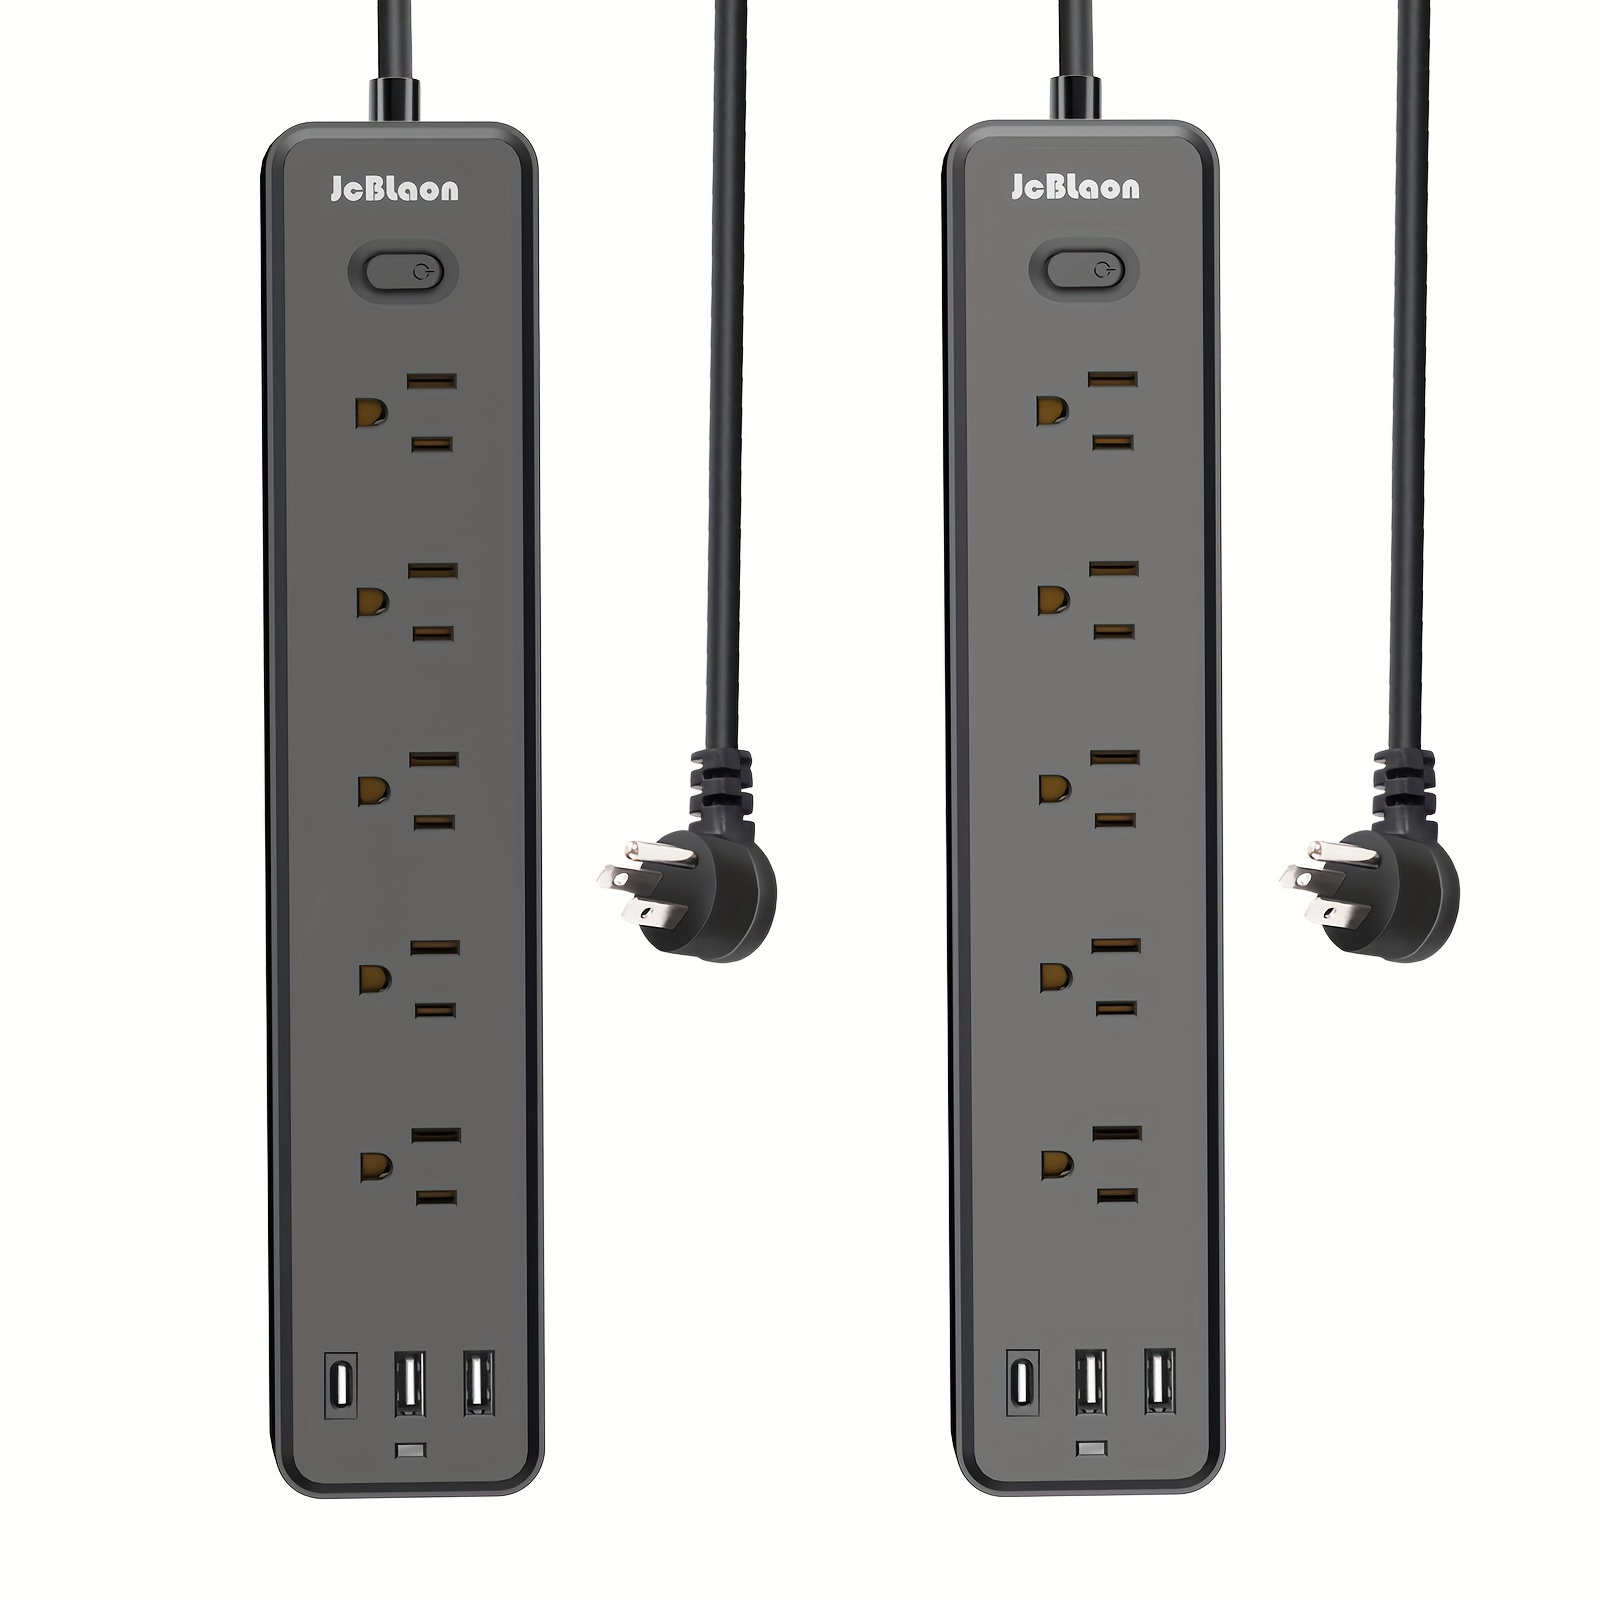  Regleta protectora de sobretensiones de 6 pies con USB C, cable  de extensión con 8 tomas anchas (2.2 pulgadas) y 4 puertos USB (2 USB C),  enchufe plano, montaje en pared